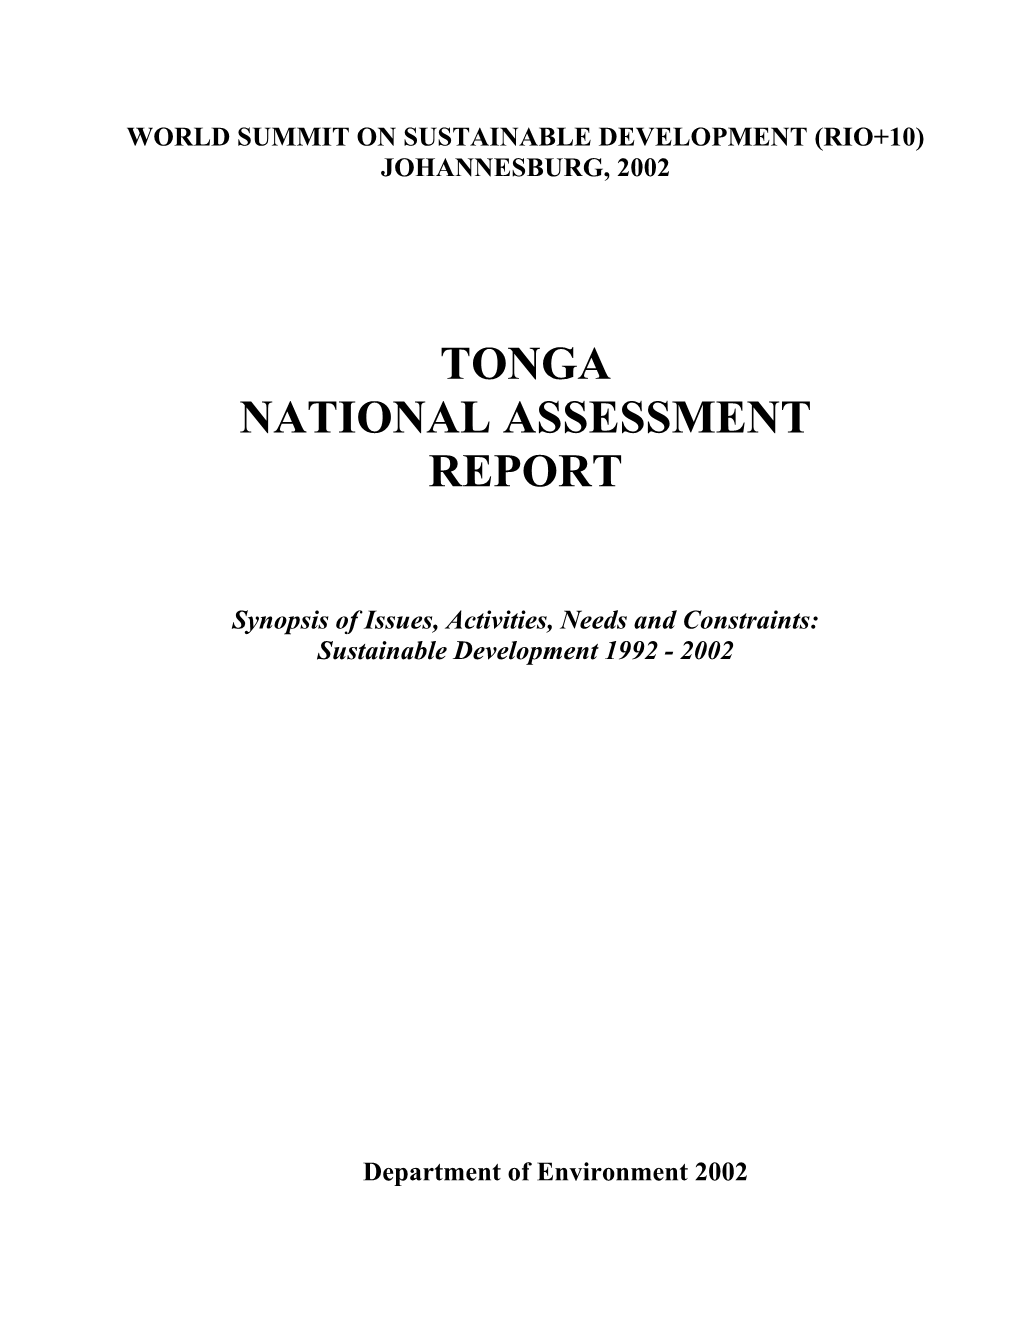 Tonga National Assessment Report